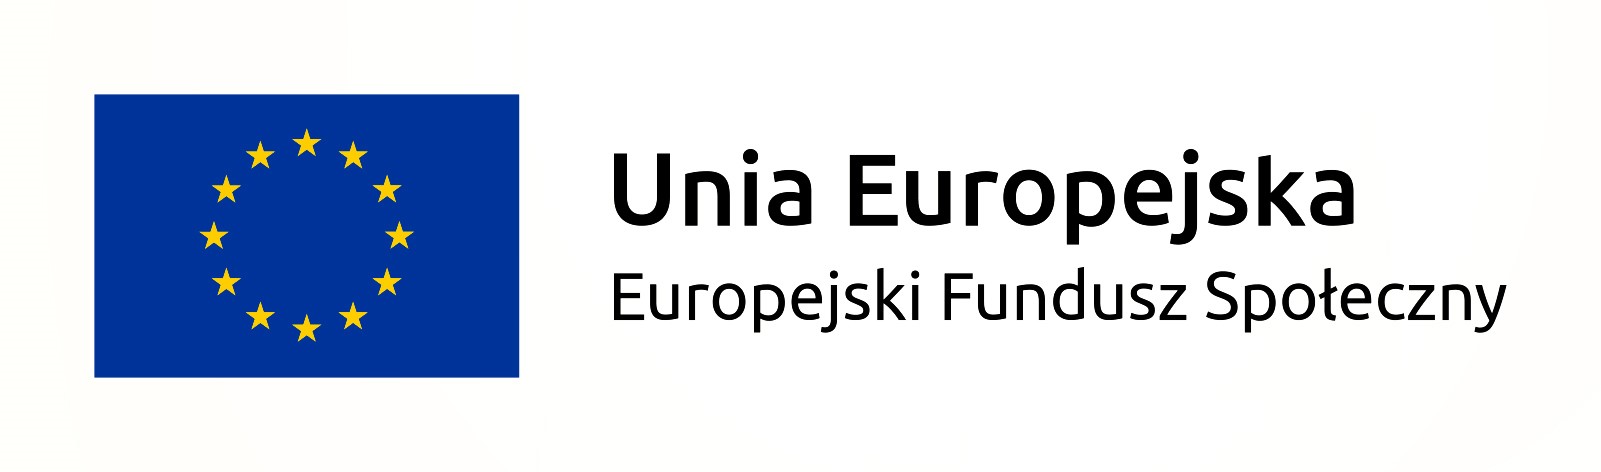 Baner będący linkiem do strony Europejski Fundusz socjalny